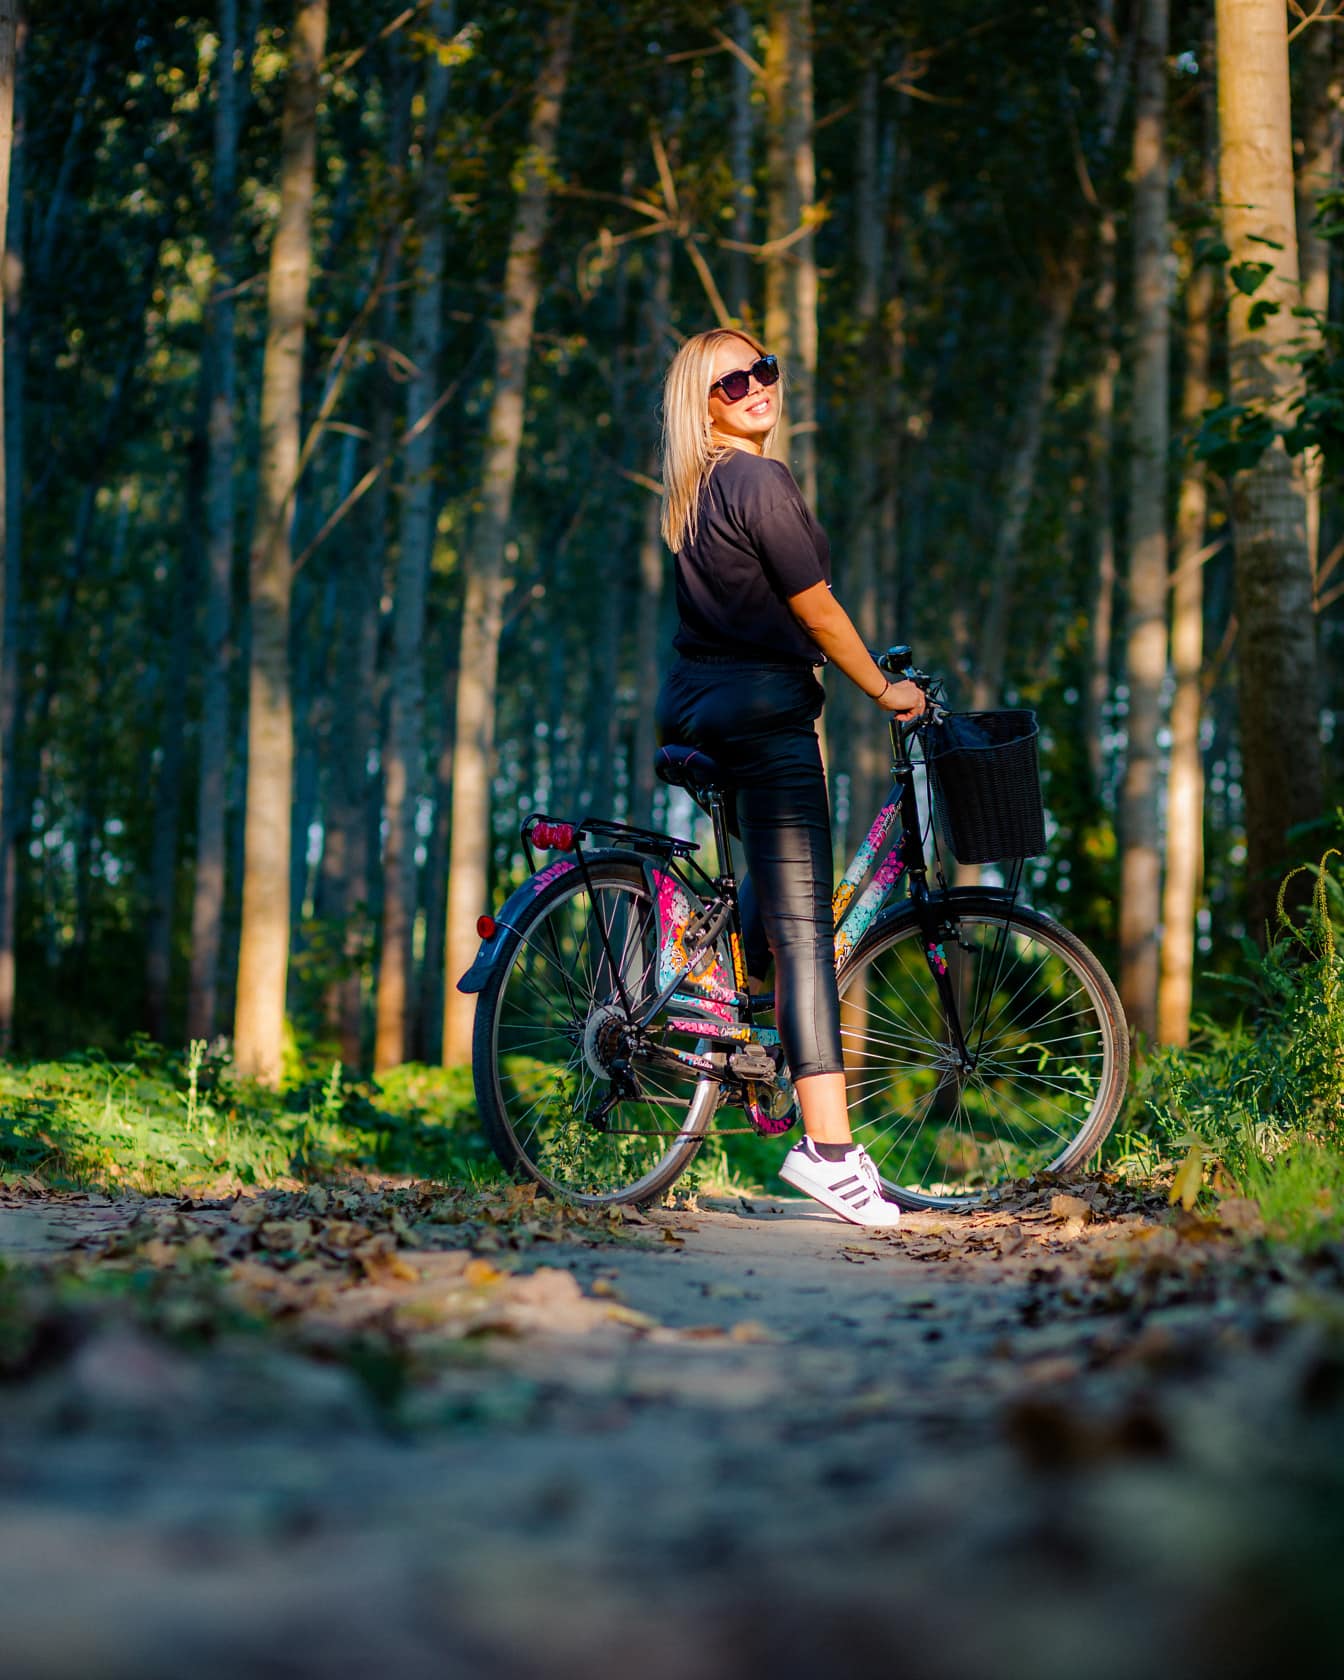 Aanbiddelijke blonde haartiener op fiets in bos